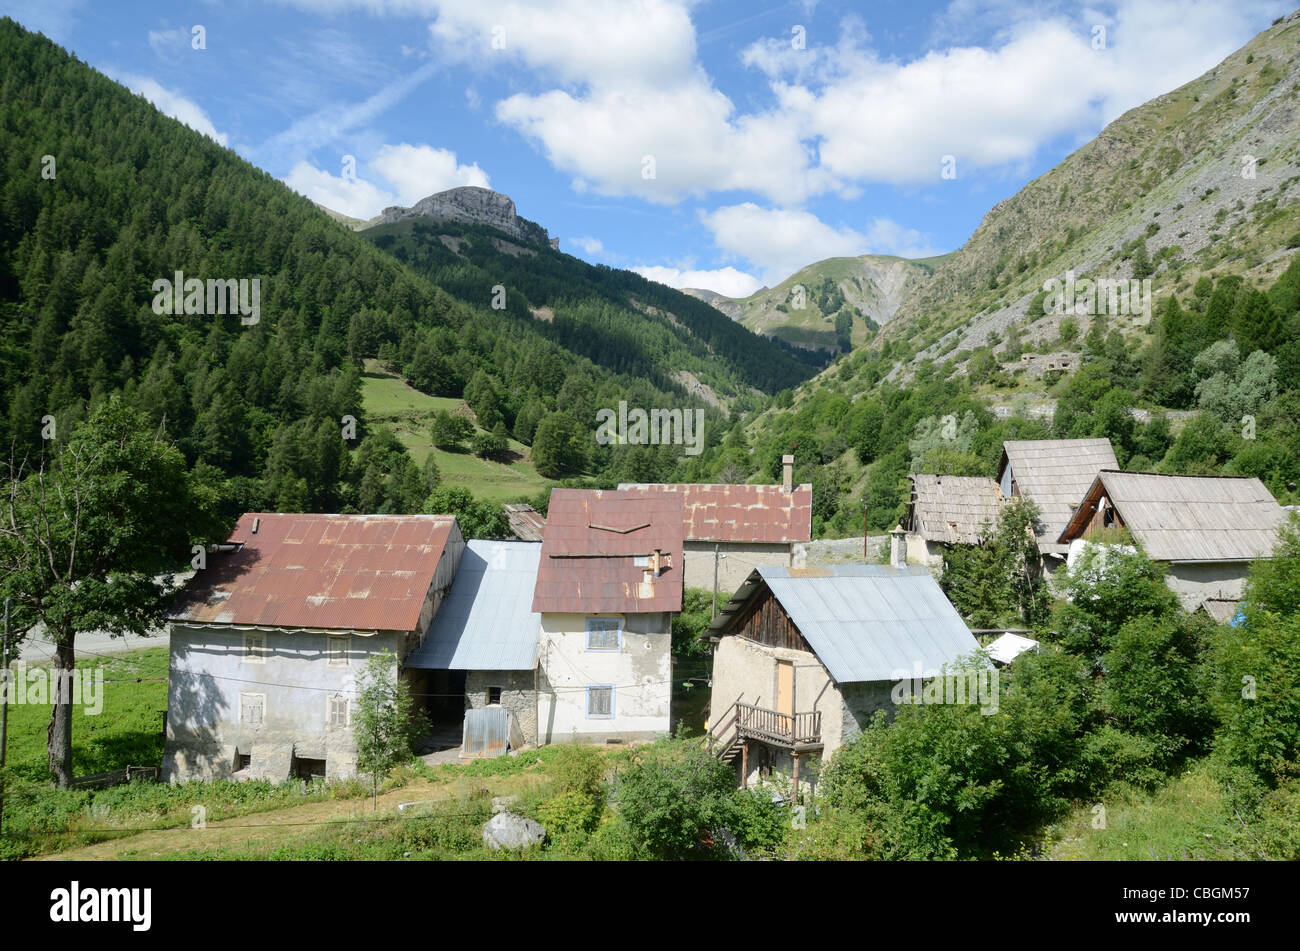 Le Pra de hameau ou village alpin, Saint Dalmas-le-Selvage, Tinée Valley, la Route de la Bonette, Alpes-Maritimes, France Banque D'Images